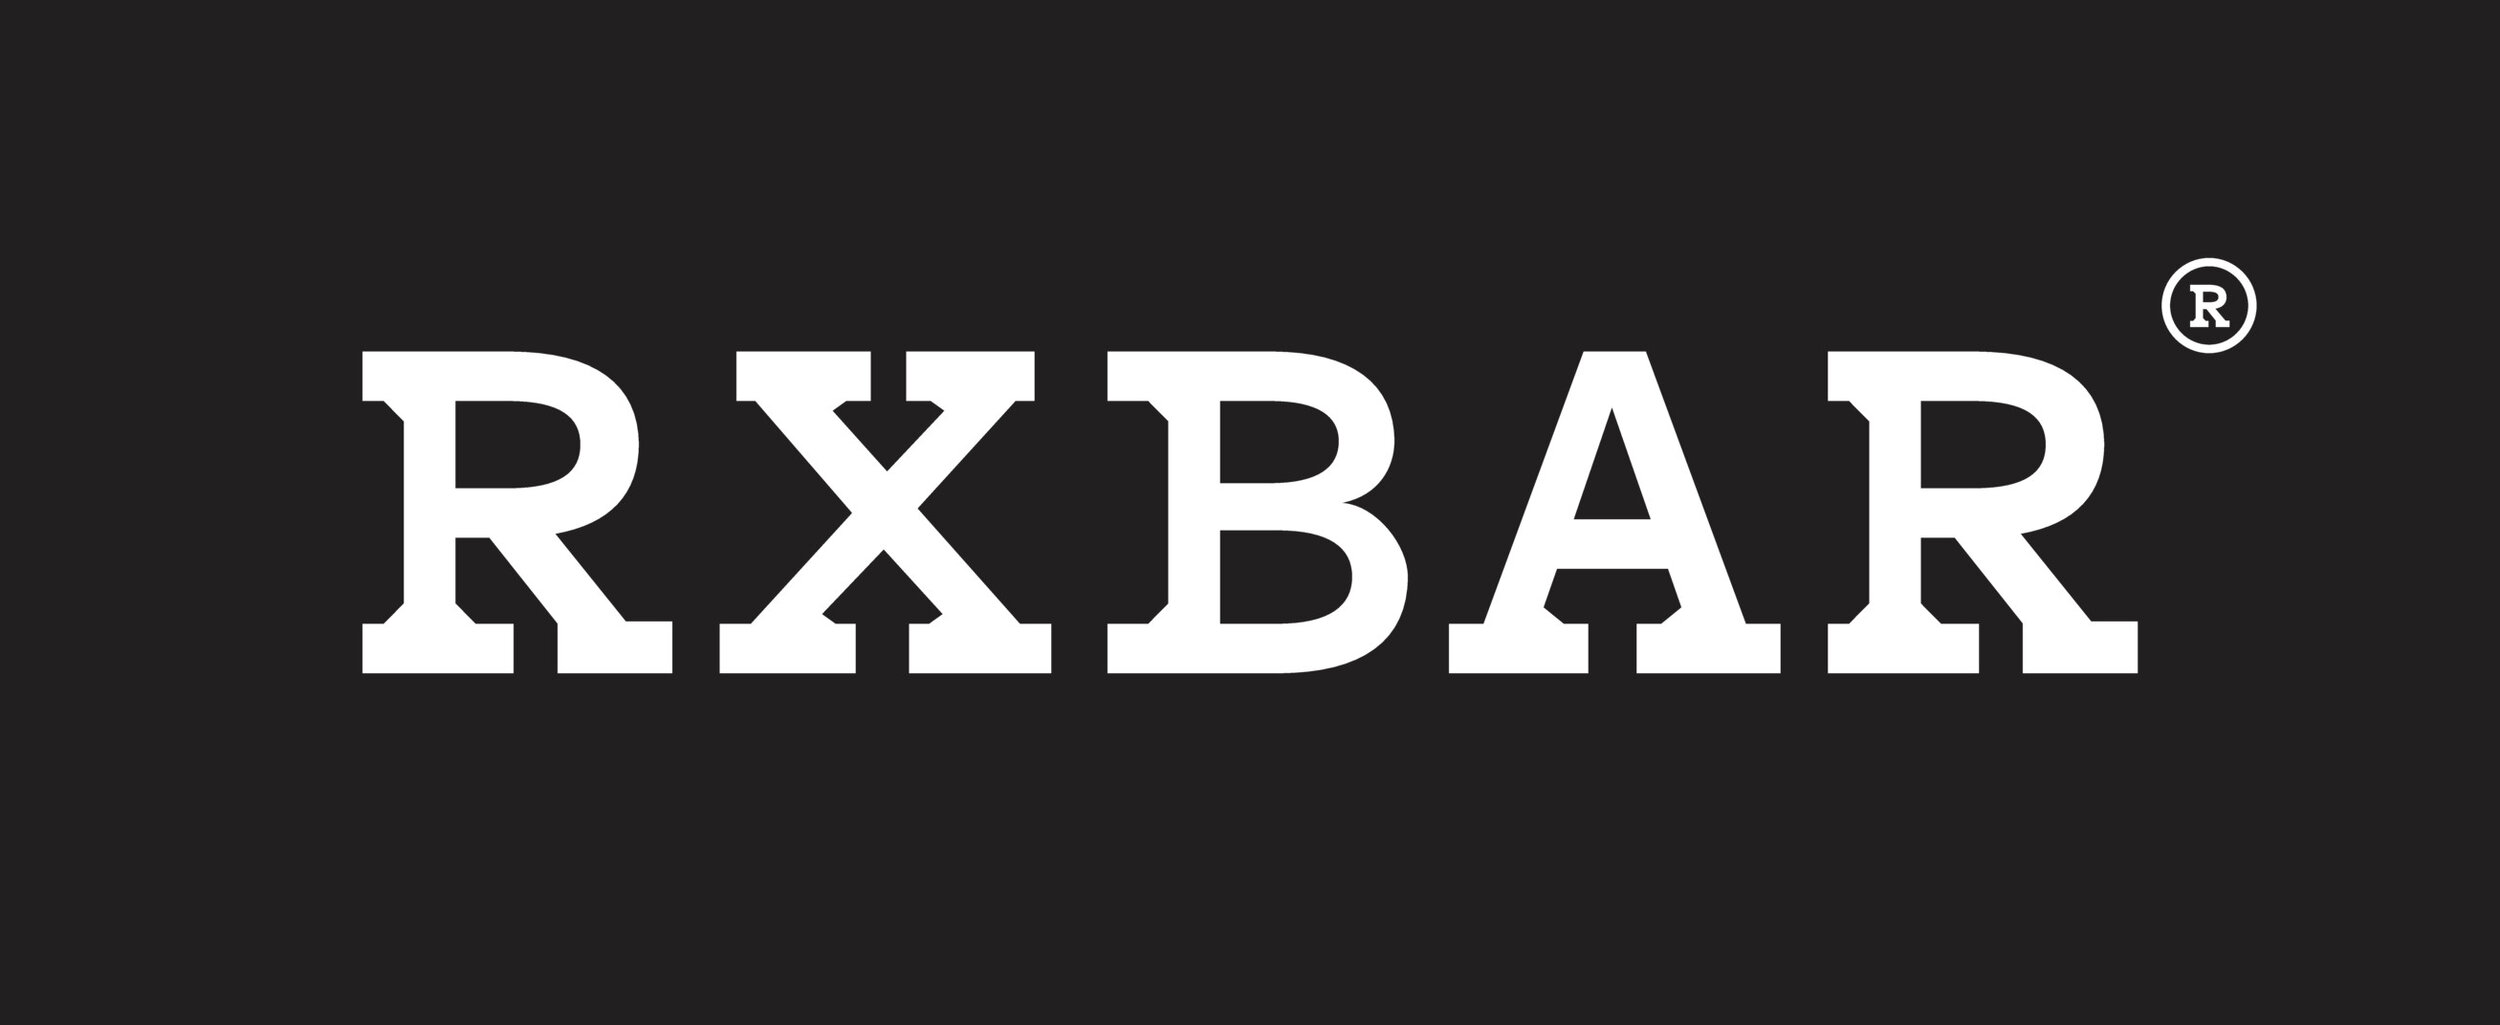 RXBAR.jpg